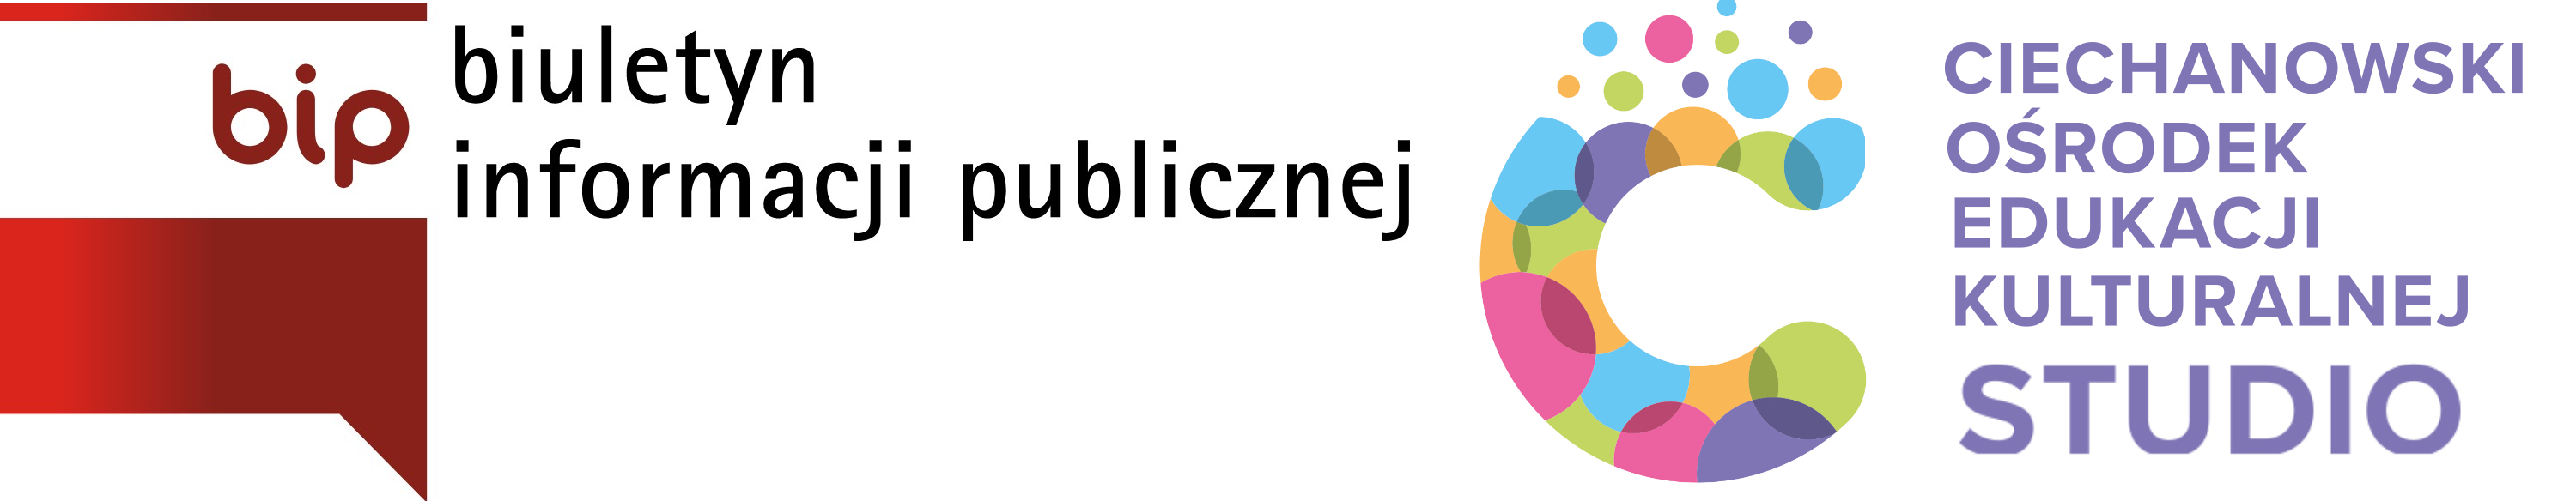 BIP - Ciechanowski Ośrodek Edukacji Kulturalnej STUDIO